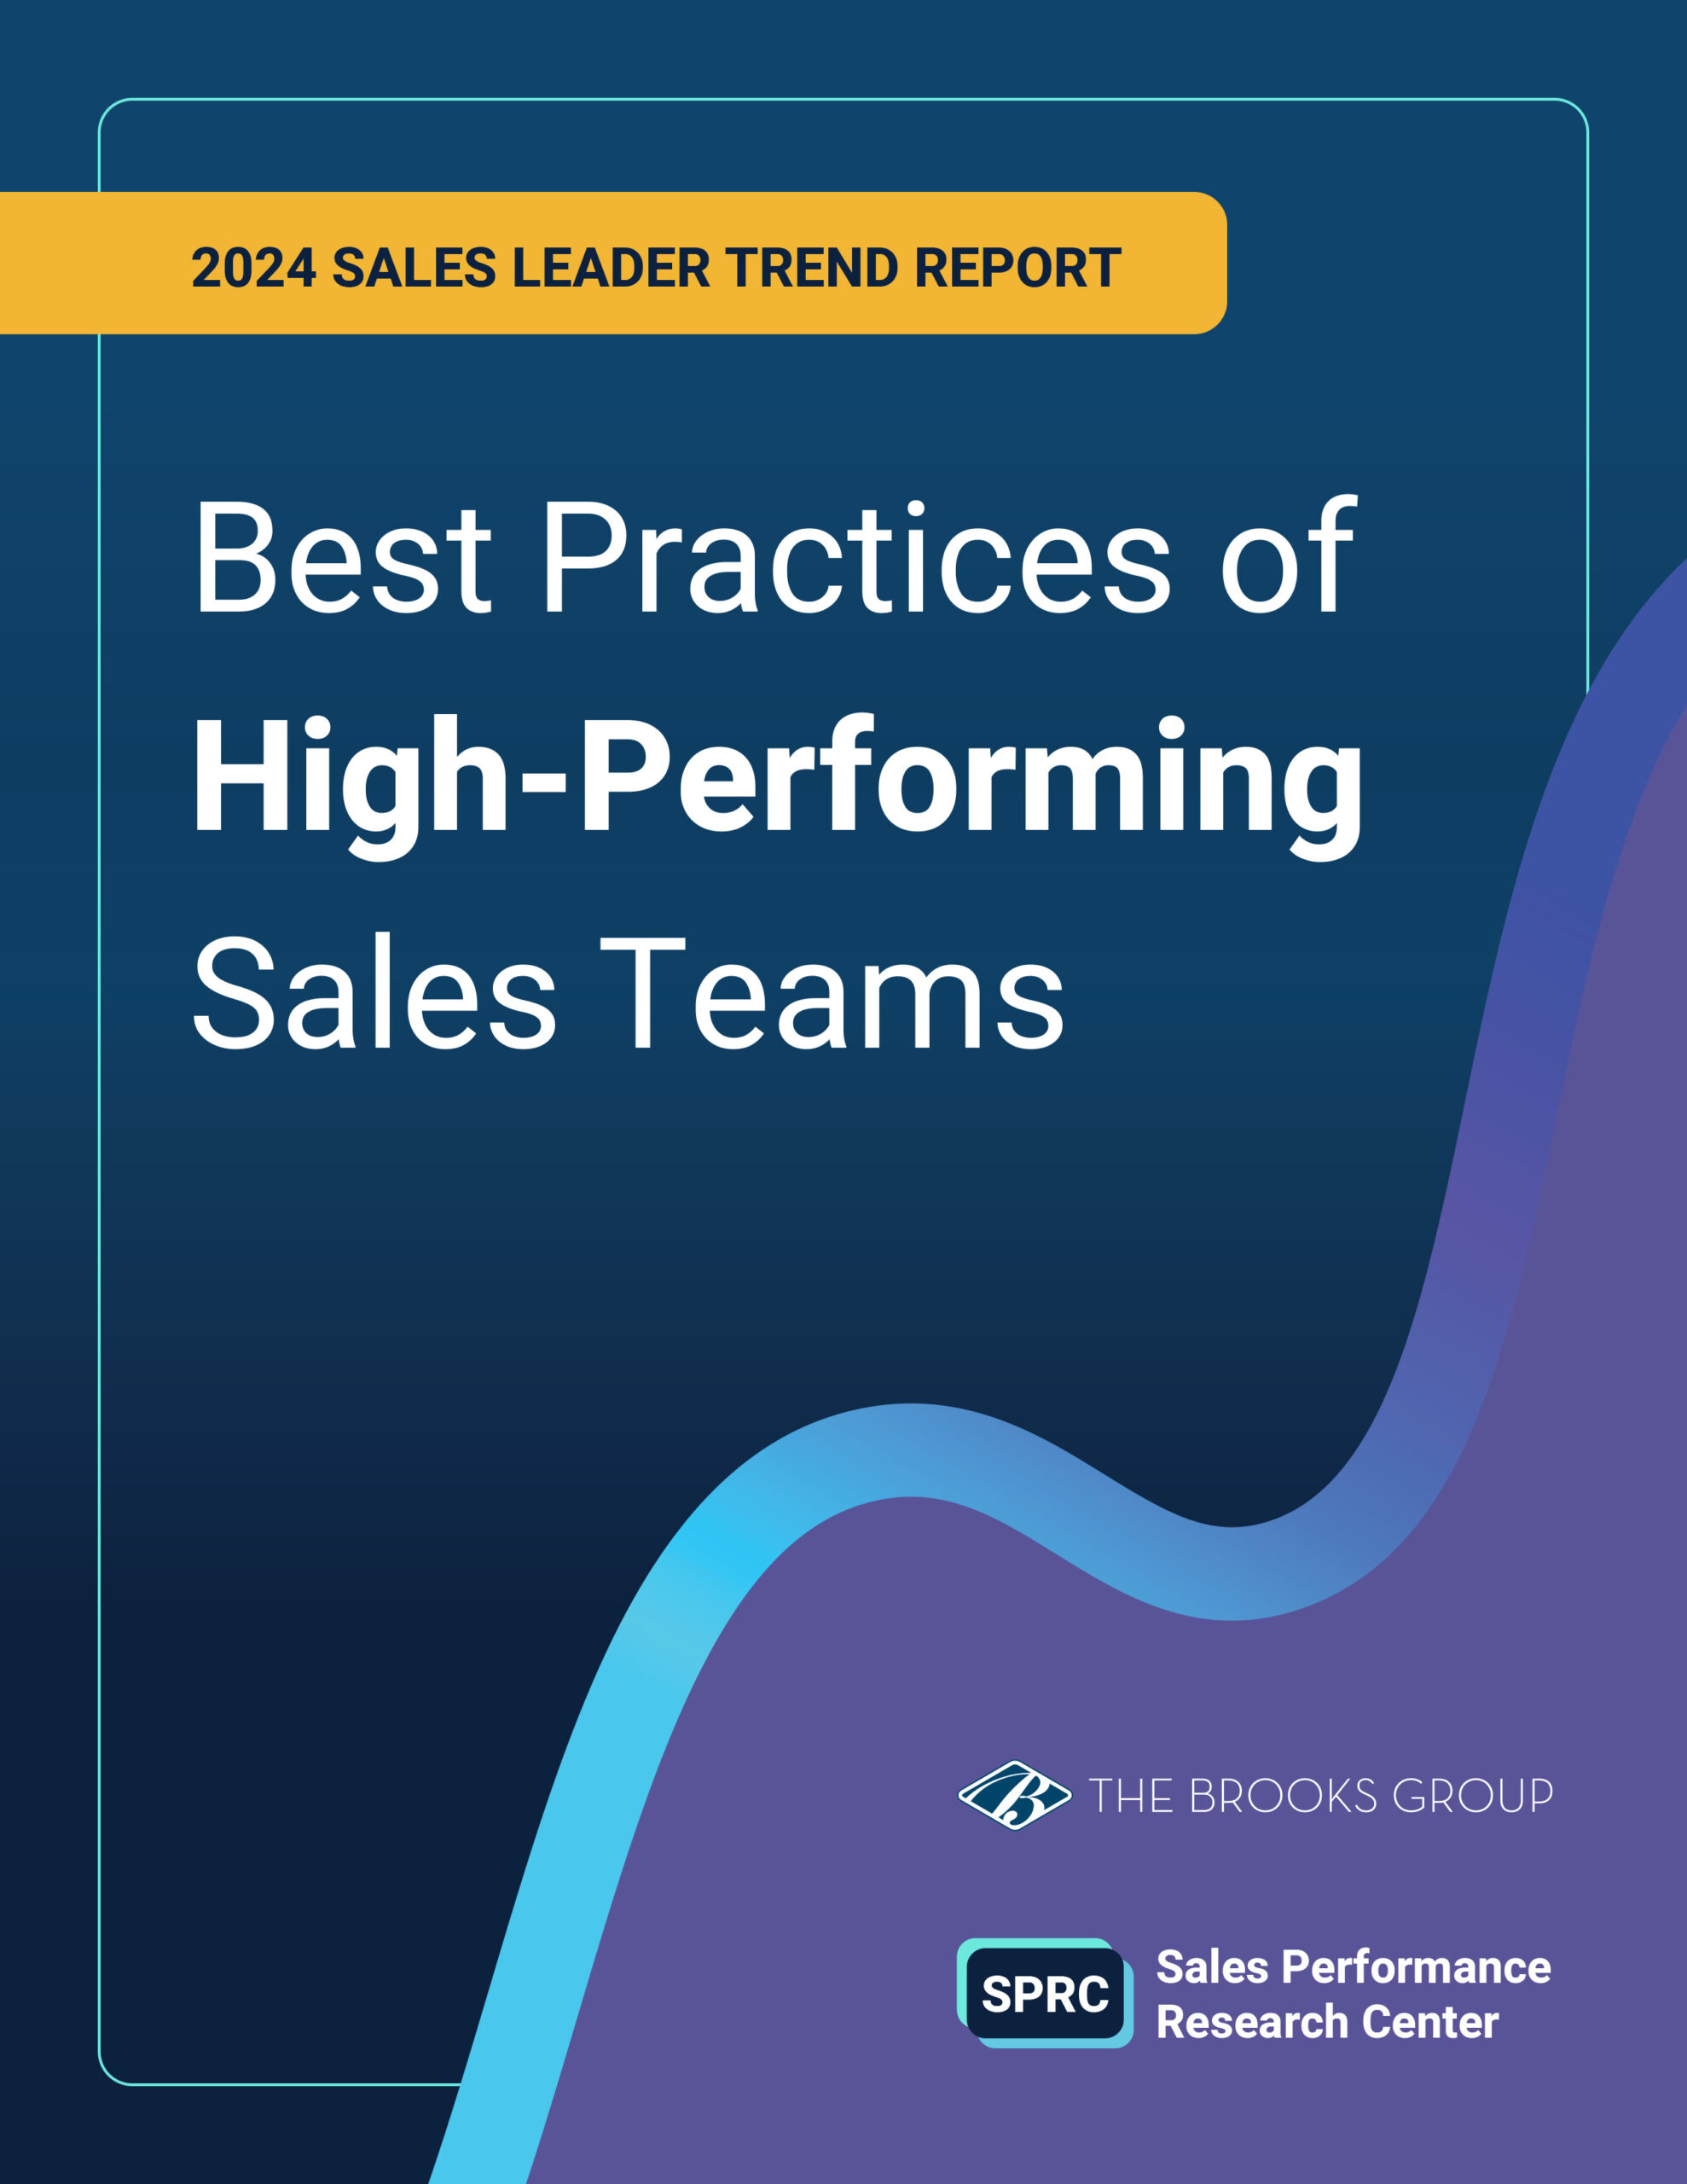 2024 Sales Leader Trend Report - Best Practices High Performing Teams